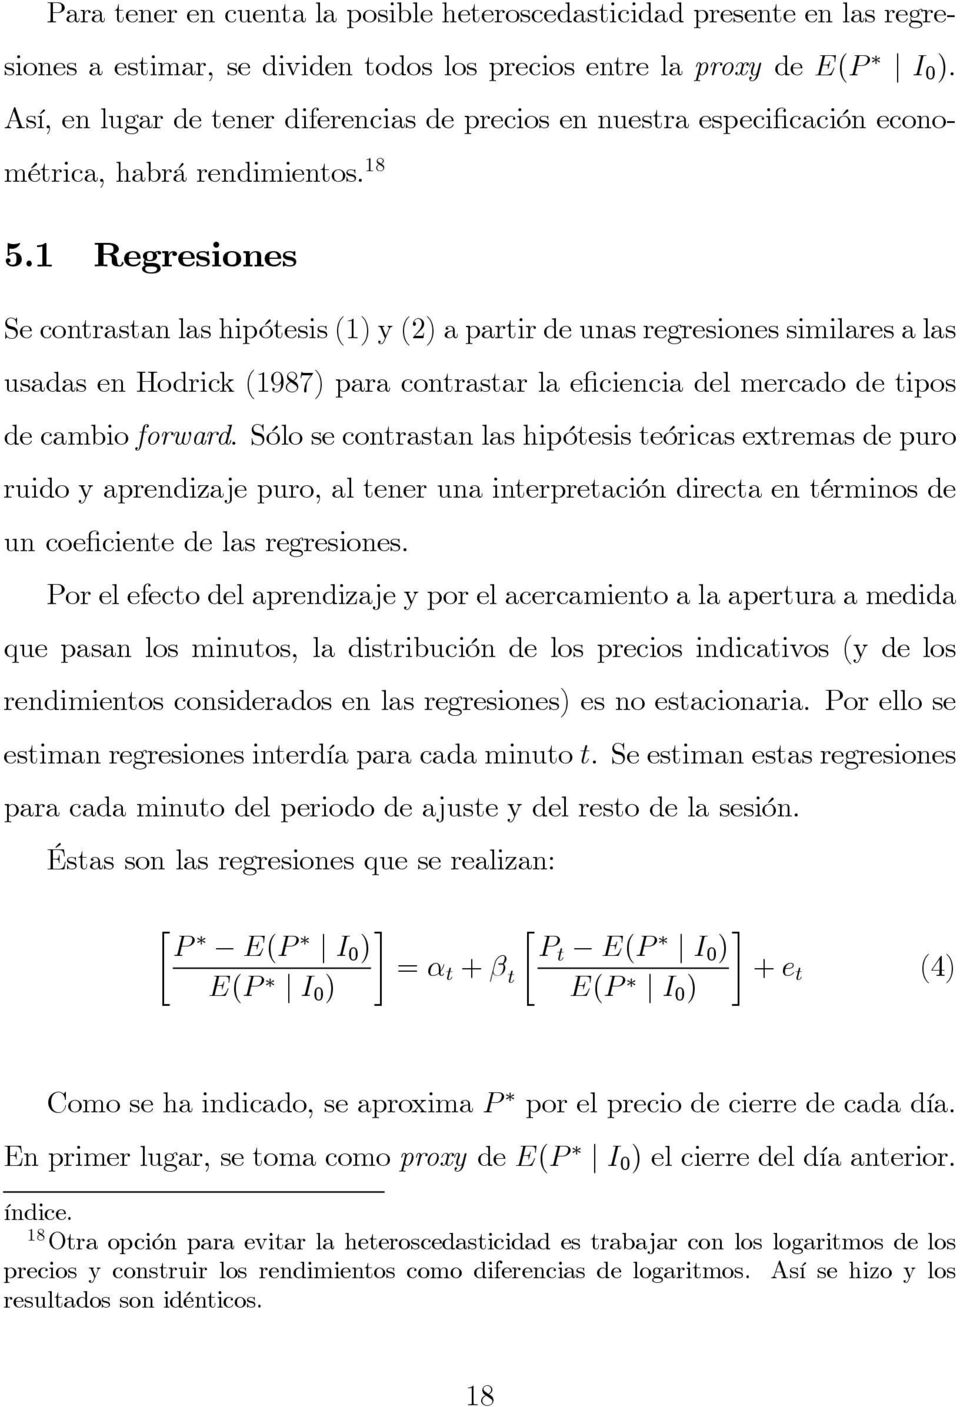 1 Regresiones Se contrastan las hipótesis (1) y (2) a partir de unas regresiones similares a las usadas en Hodrick (1987) para contrastar la e ciencia del mercado de tipos de cambio forward.